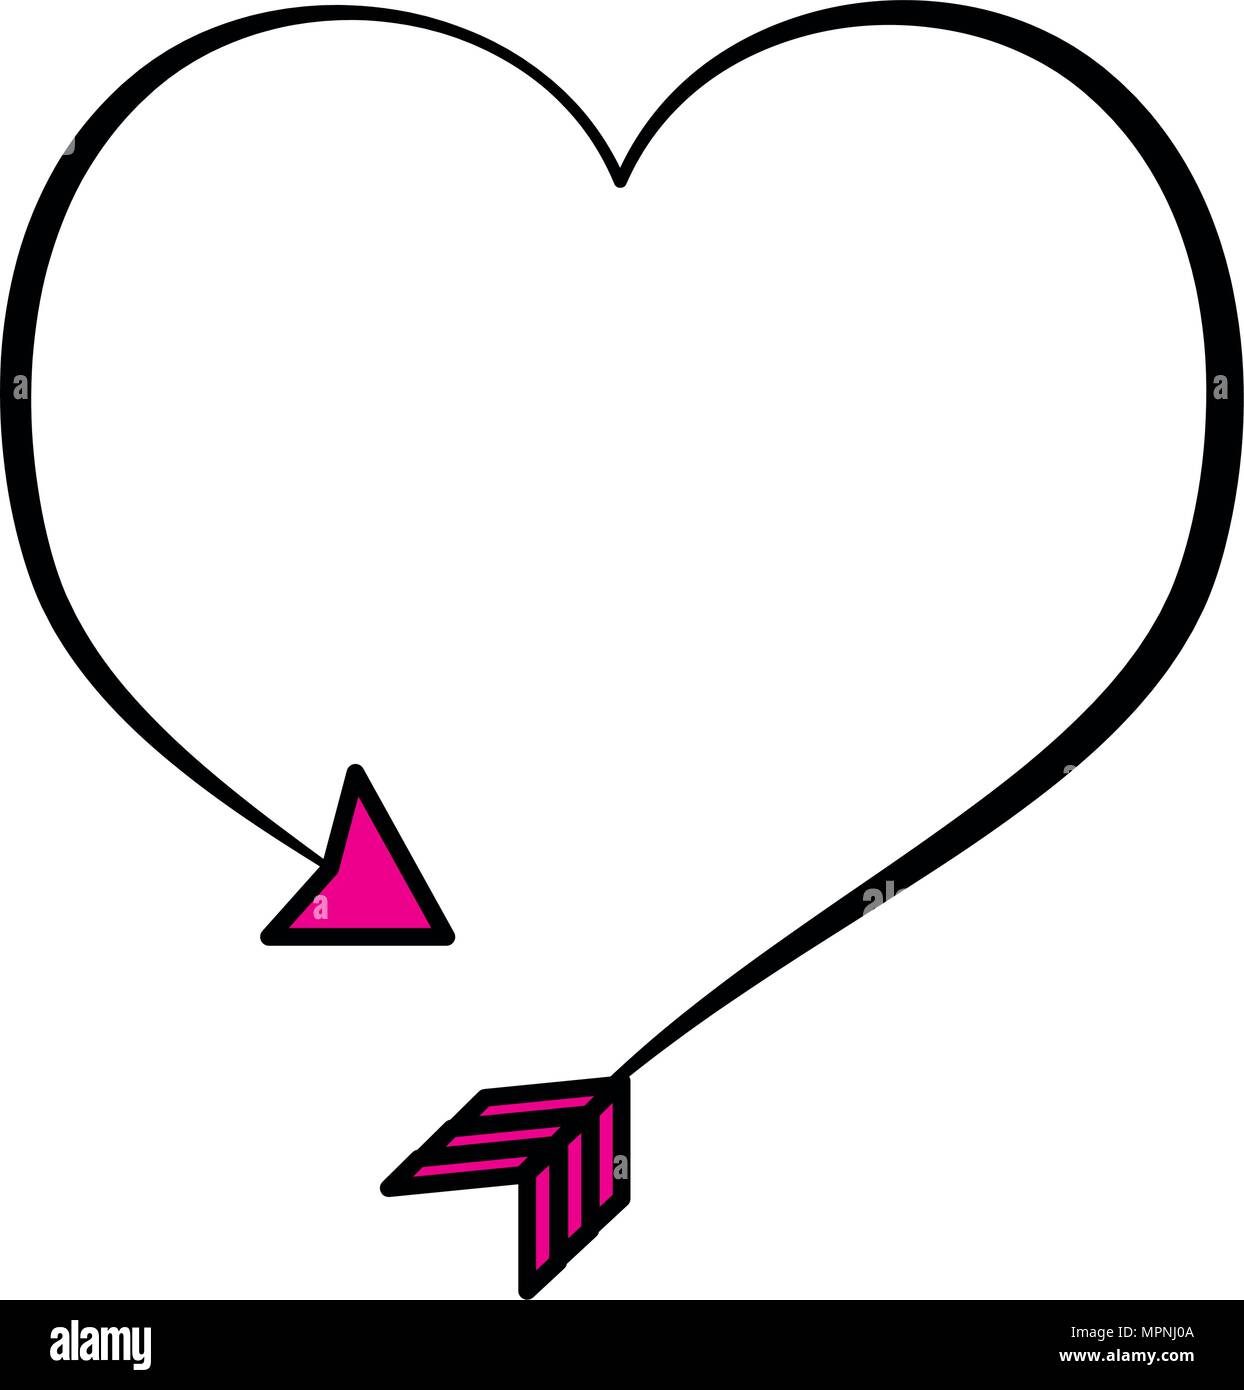 Piktogramm Pfeil Herz Zeichen Symbol Vektor Illustration Stock Vektorgrafik Alamy